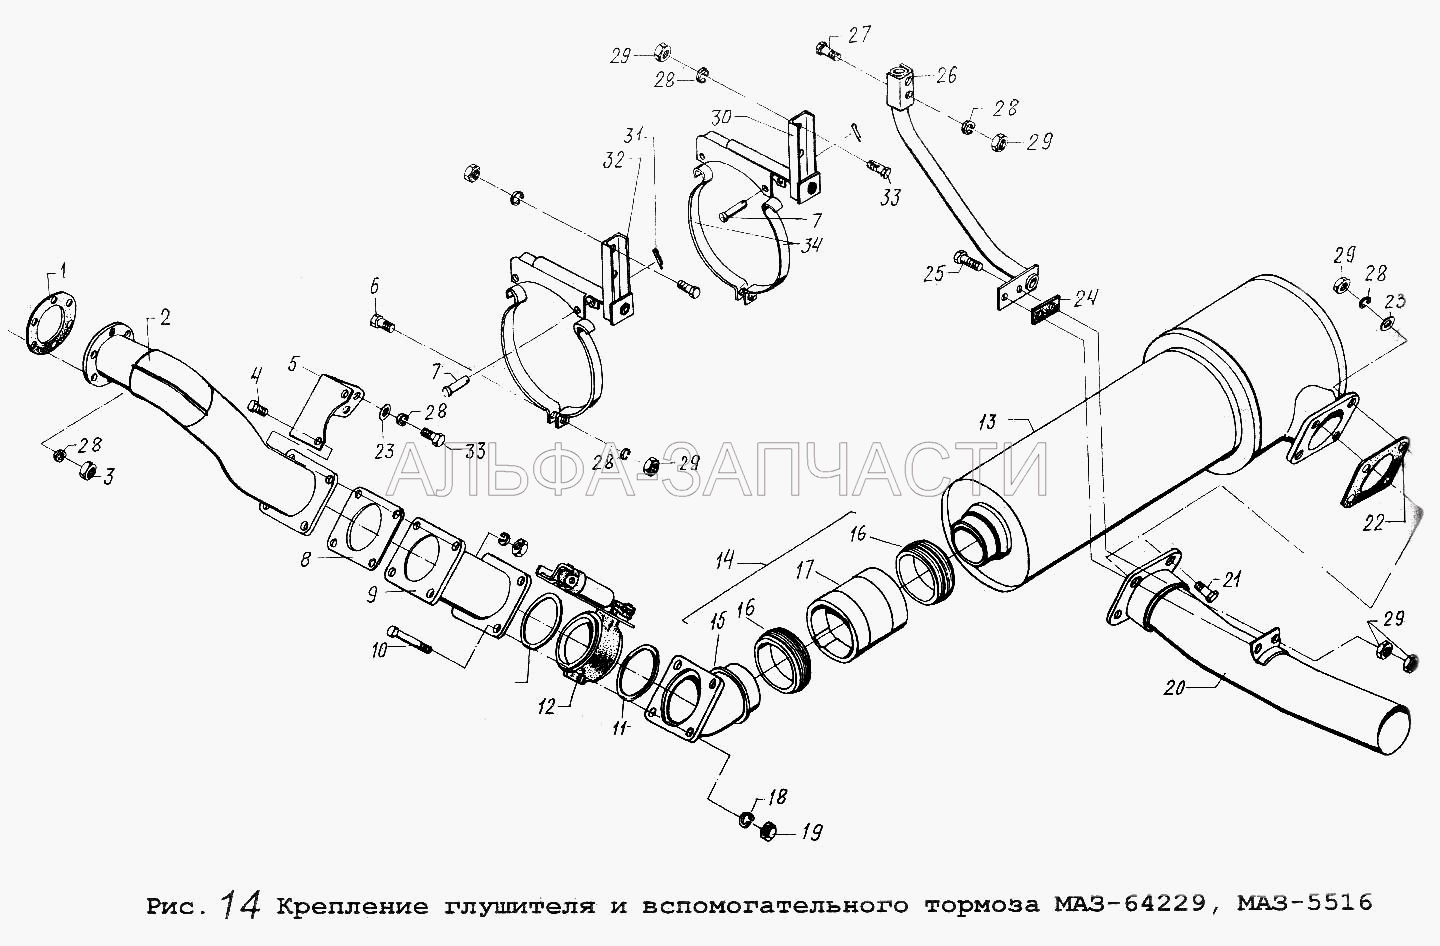 Крепление глушителя и вспомогательного тормоза МАЗ-64229, МАЗ-5516  